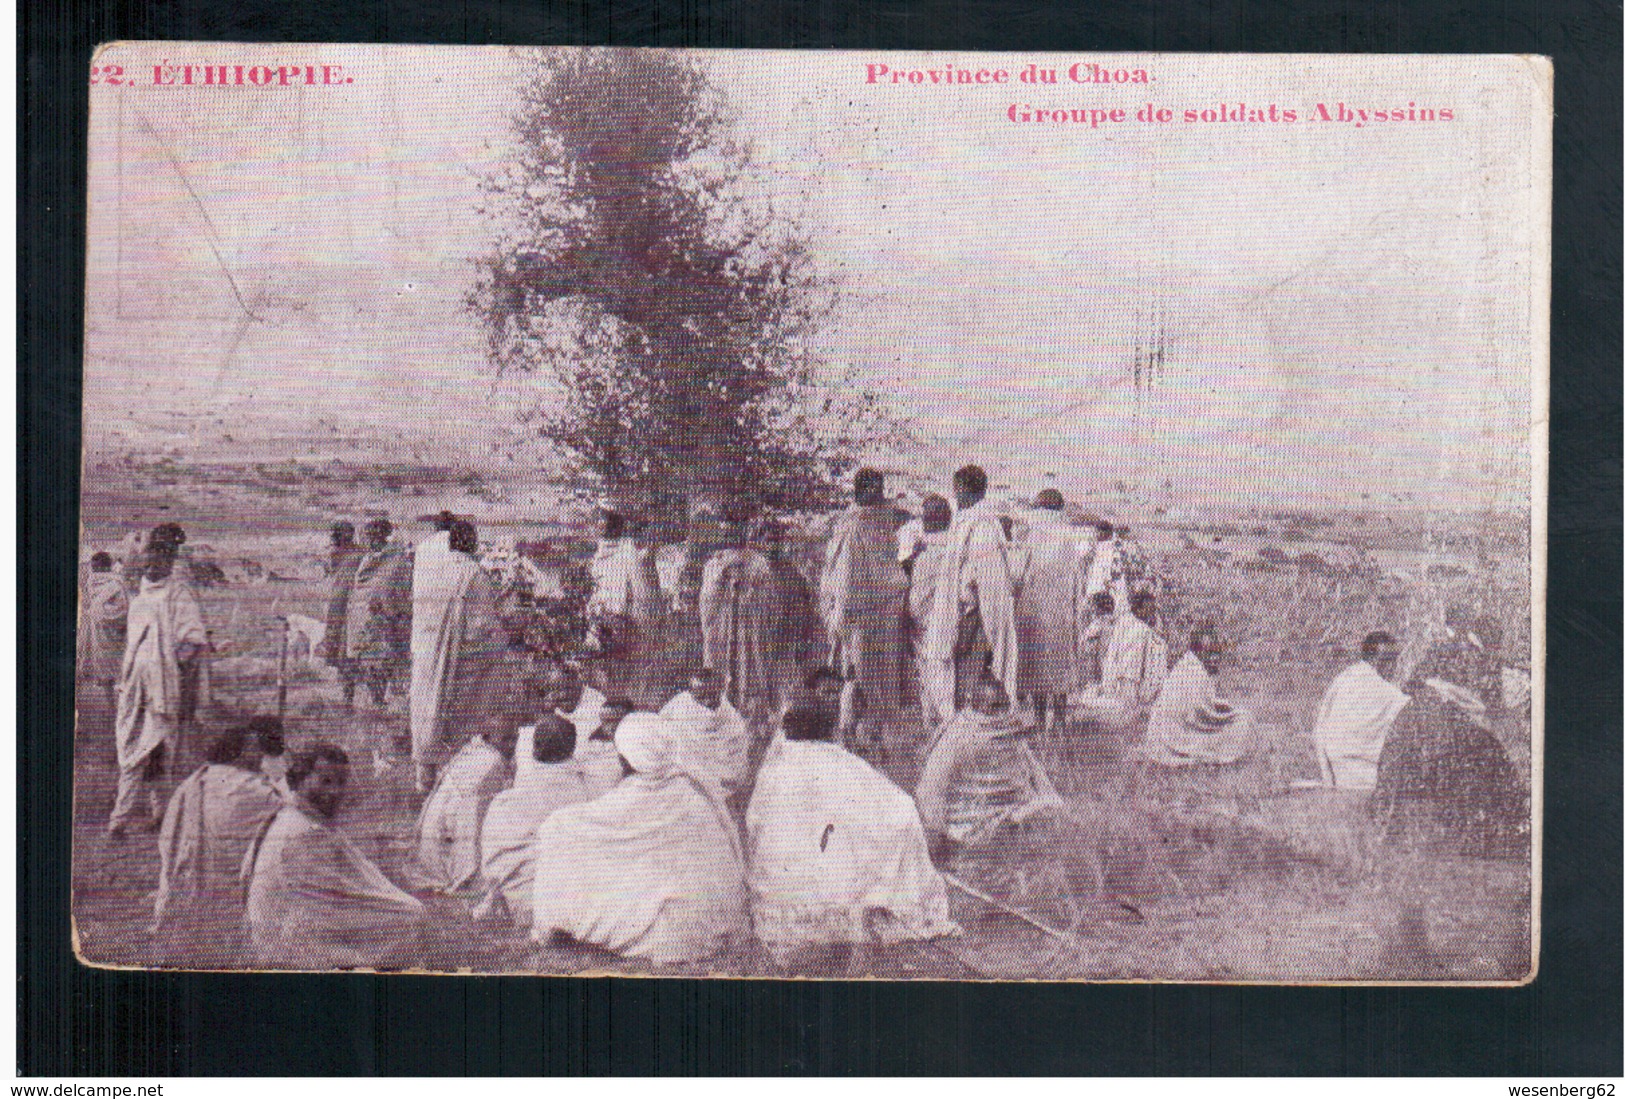 ETHIOPIE Province Du Choa - Groupe De Soldats Abyssins 1910 OLD  POSTCARD - Ethiopie